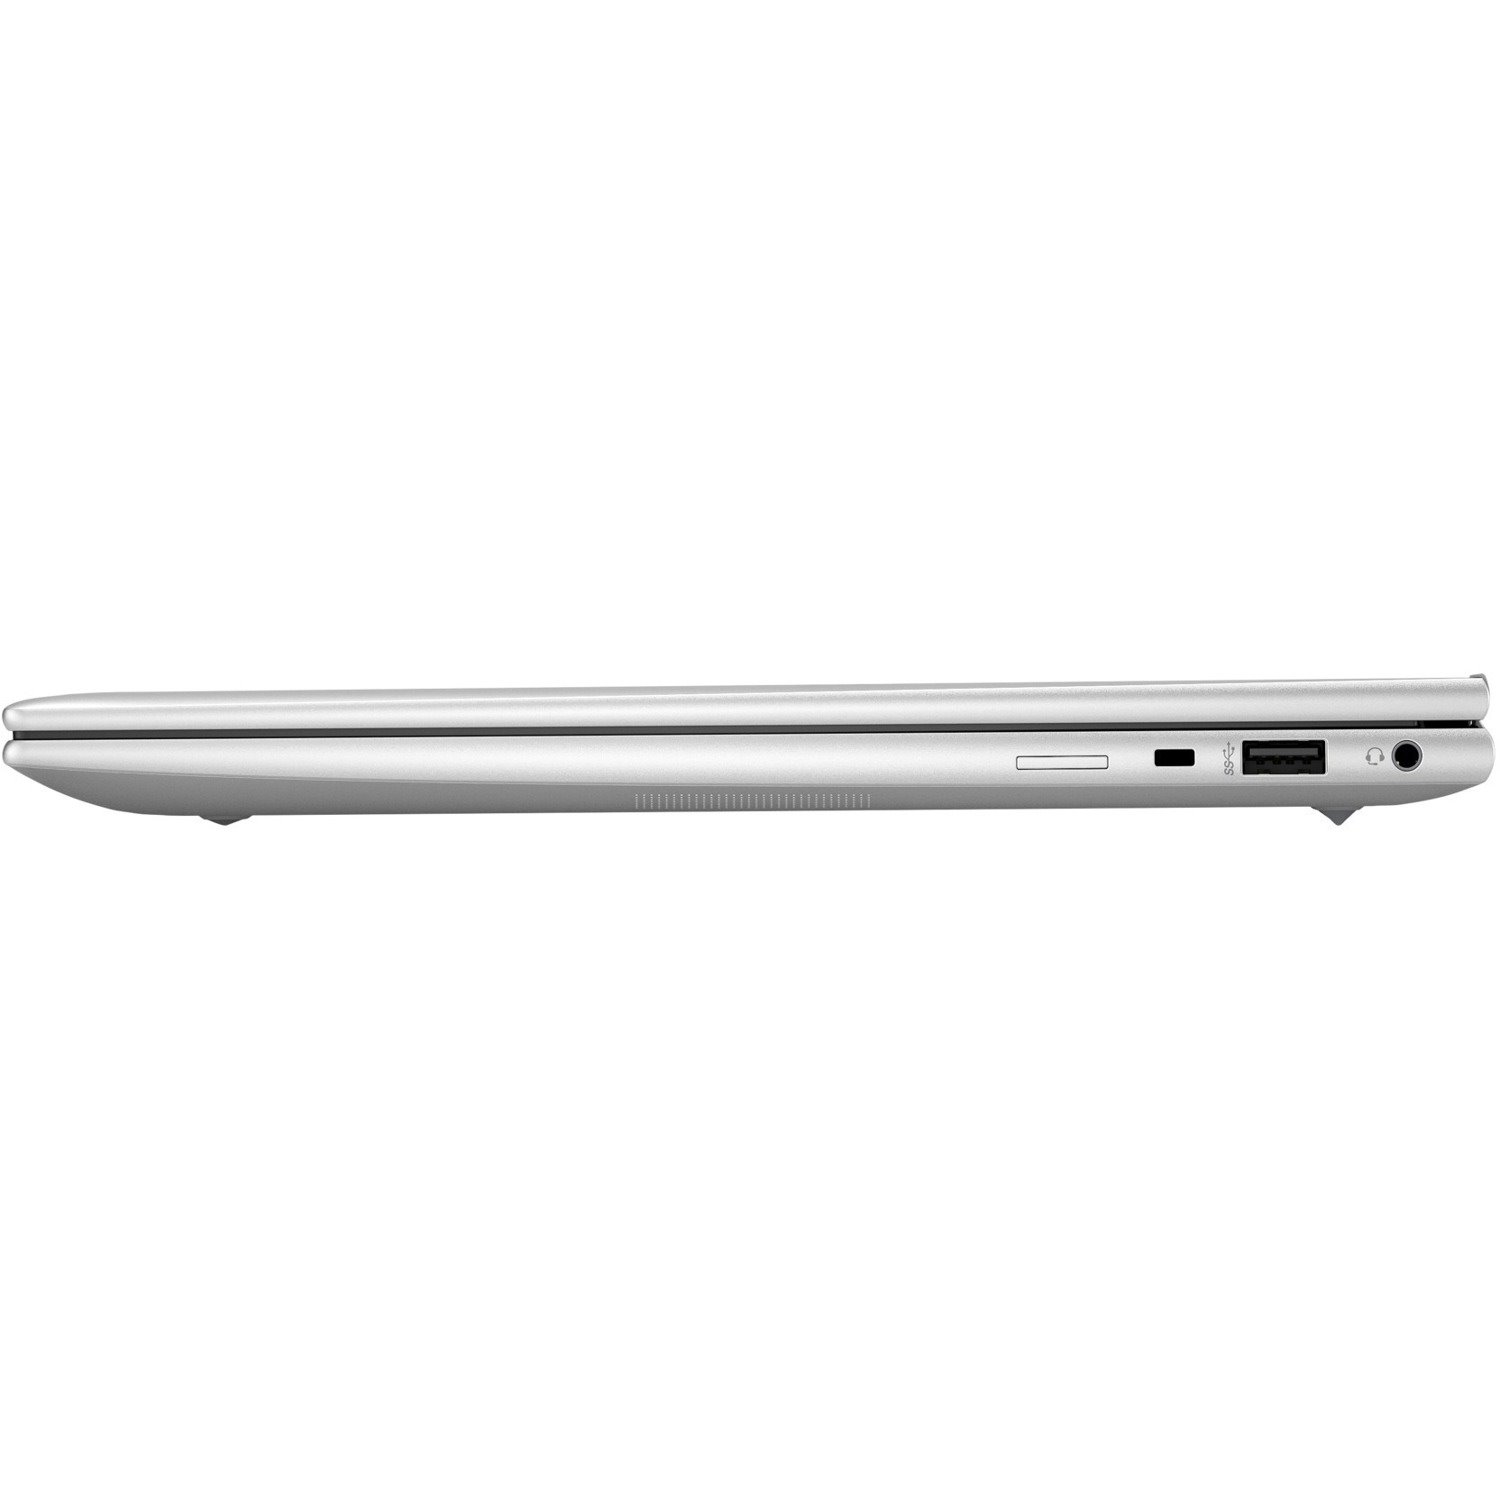 HP EliteBook 840 G9 LTE Advanced 35.6 cm (14") Notebook - WUXGA - 1920 x 1200 - Intel Core i5 12th Gen i5-1235U Deca-core (10 Core) - 16 GB Total RAM - 256 GB SSD